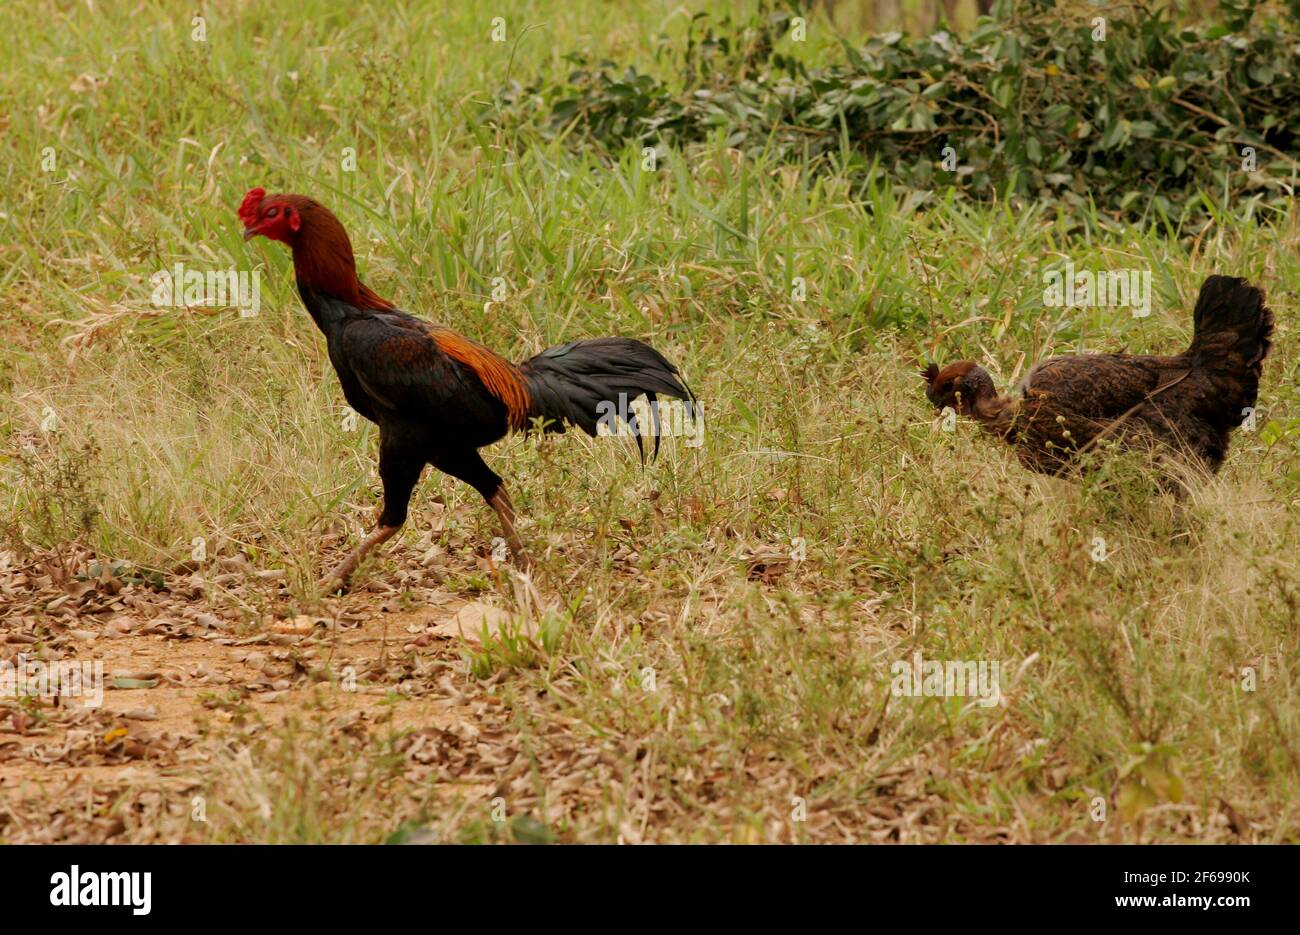 Eunapolis, bahia / brésil - 24 septembre 2010: le coq et le poulet sont vus en vrac sur une ferme dans la ville d'Eunapolis, dans le sud de Bahia. Banque D'Images